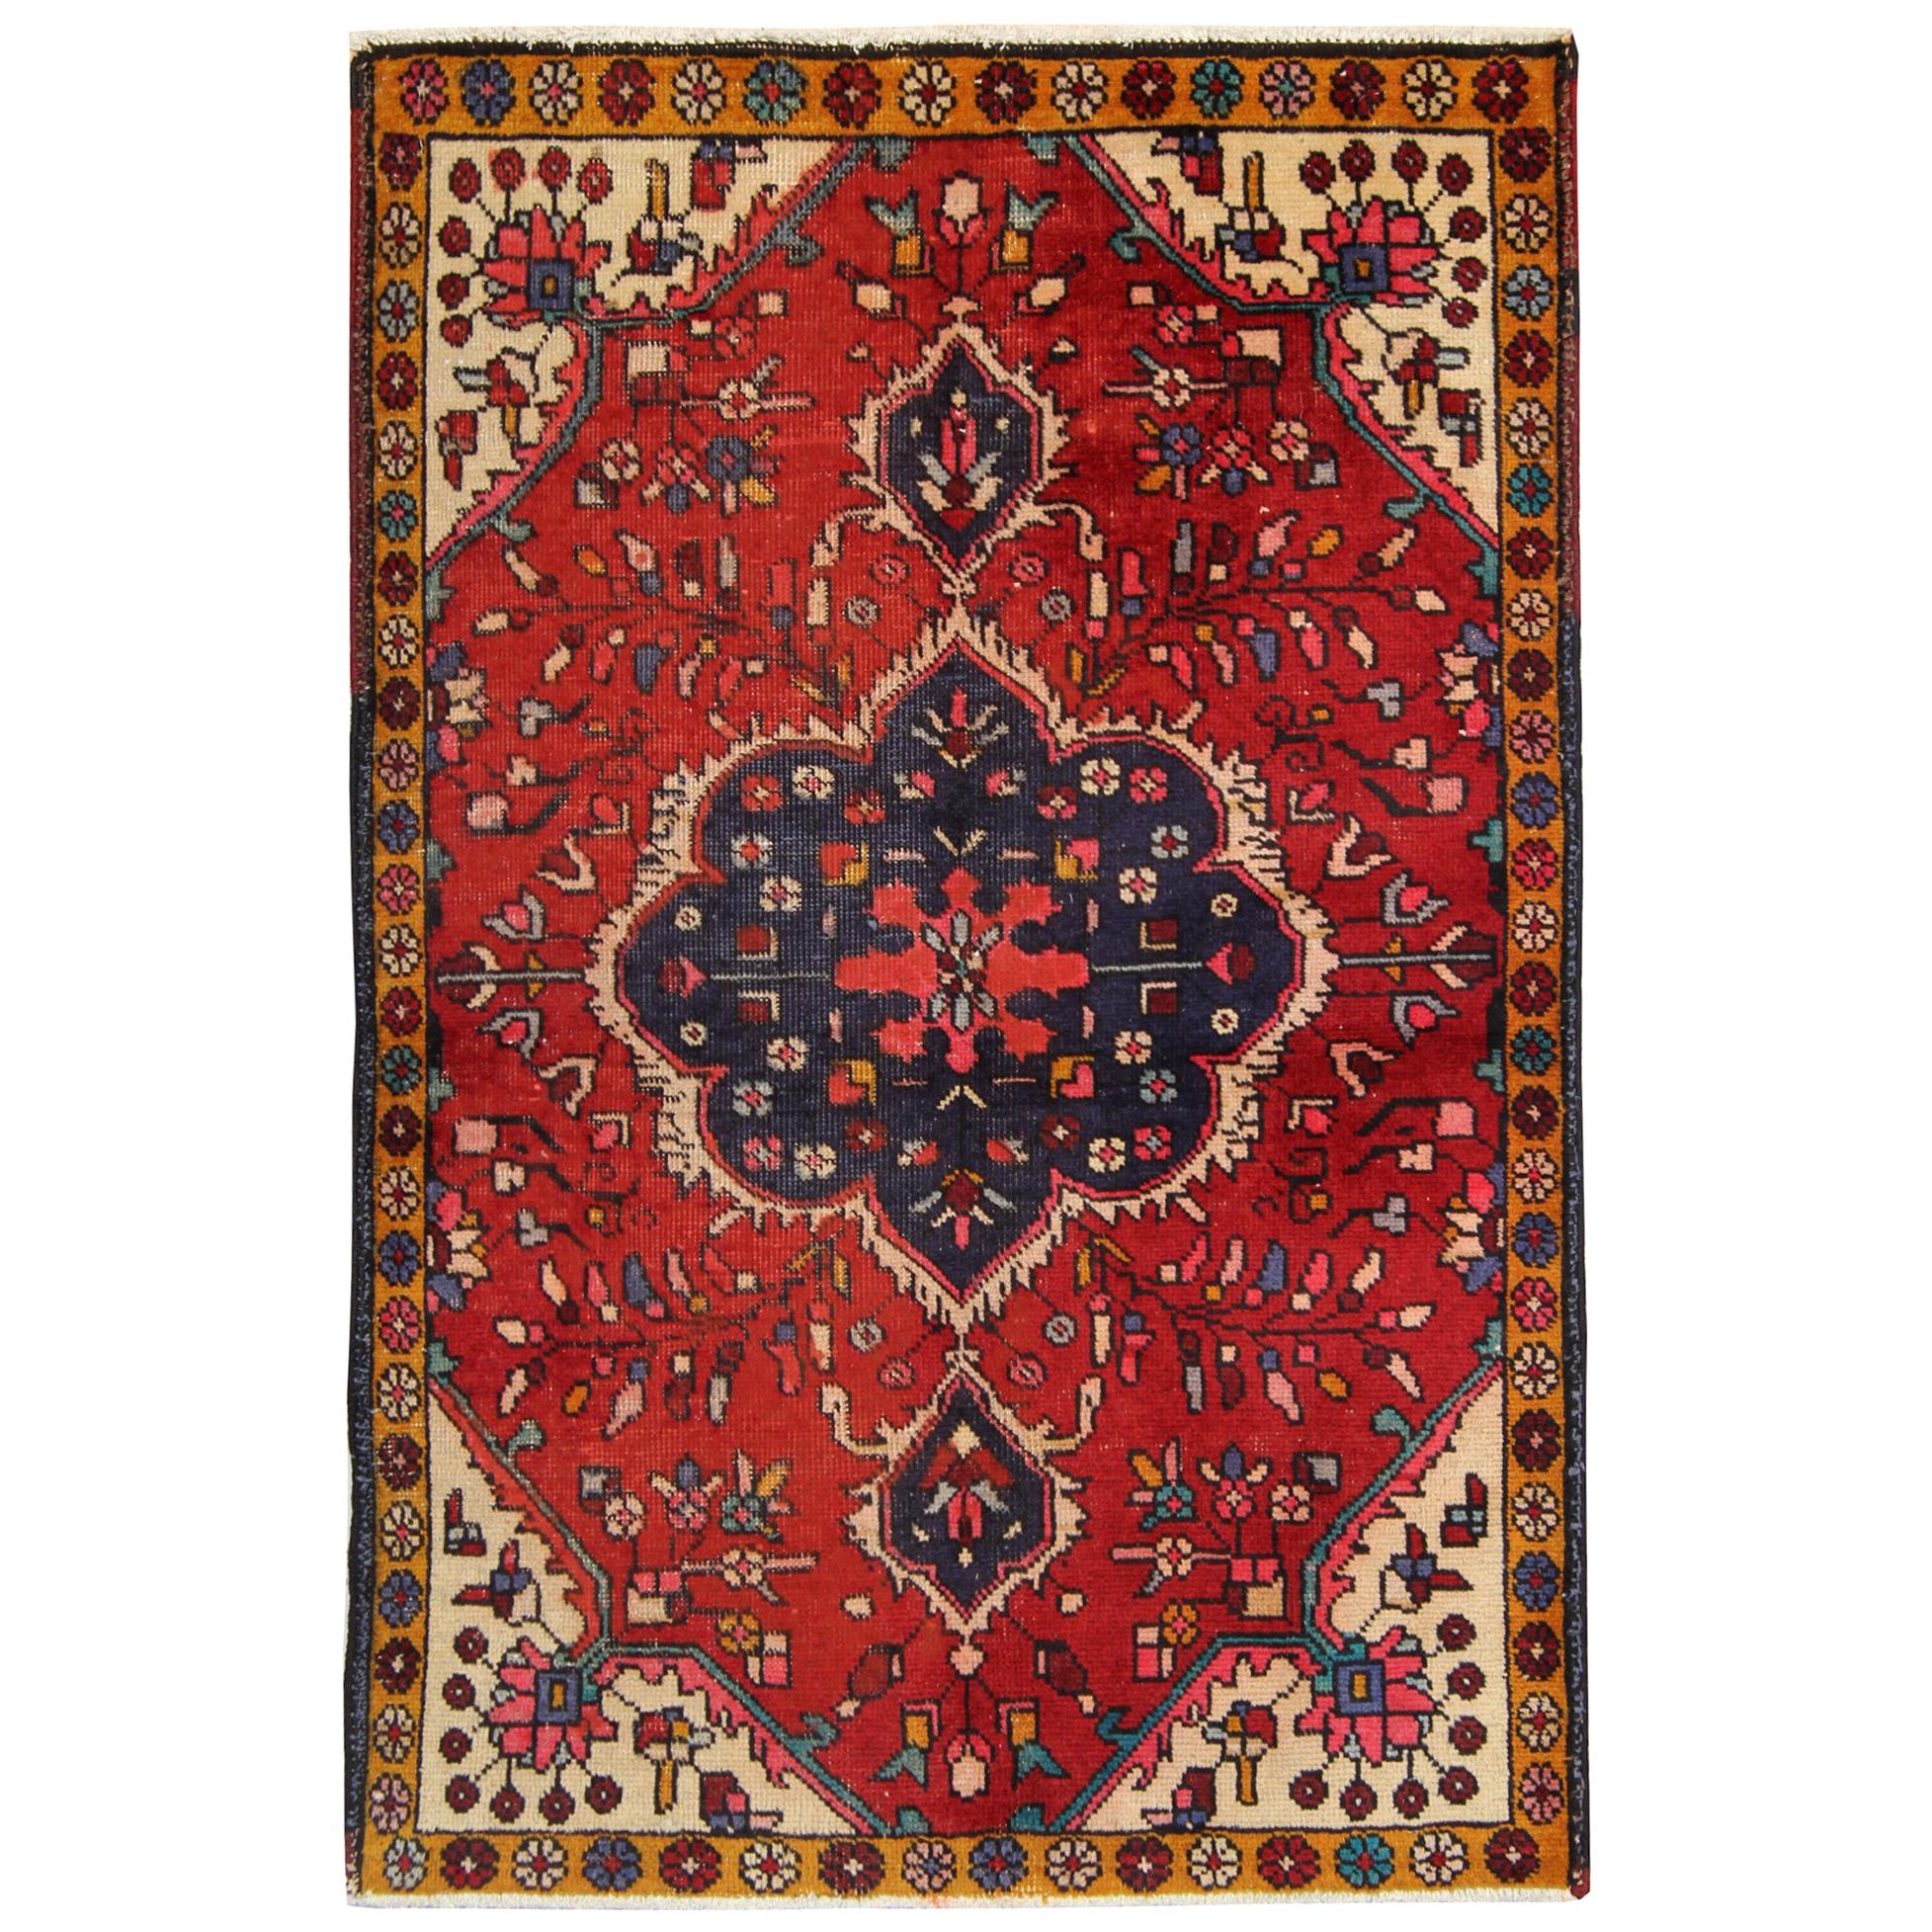 Orientalischer Teppich aus roter Wolle, Vintage, handgefertigter Teppich